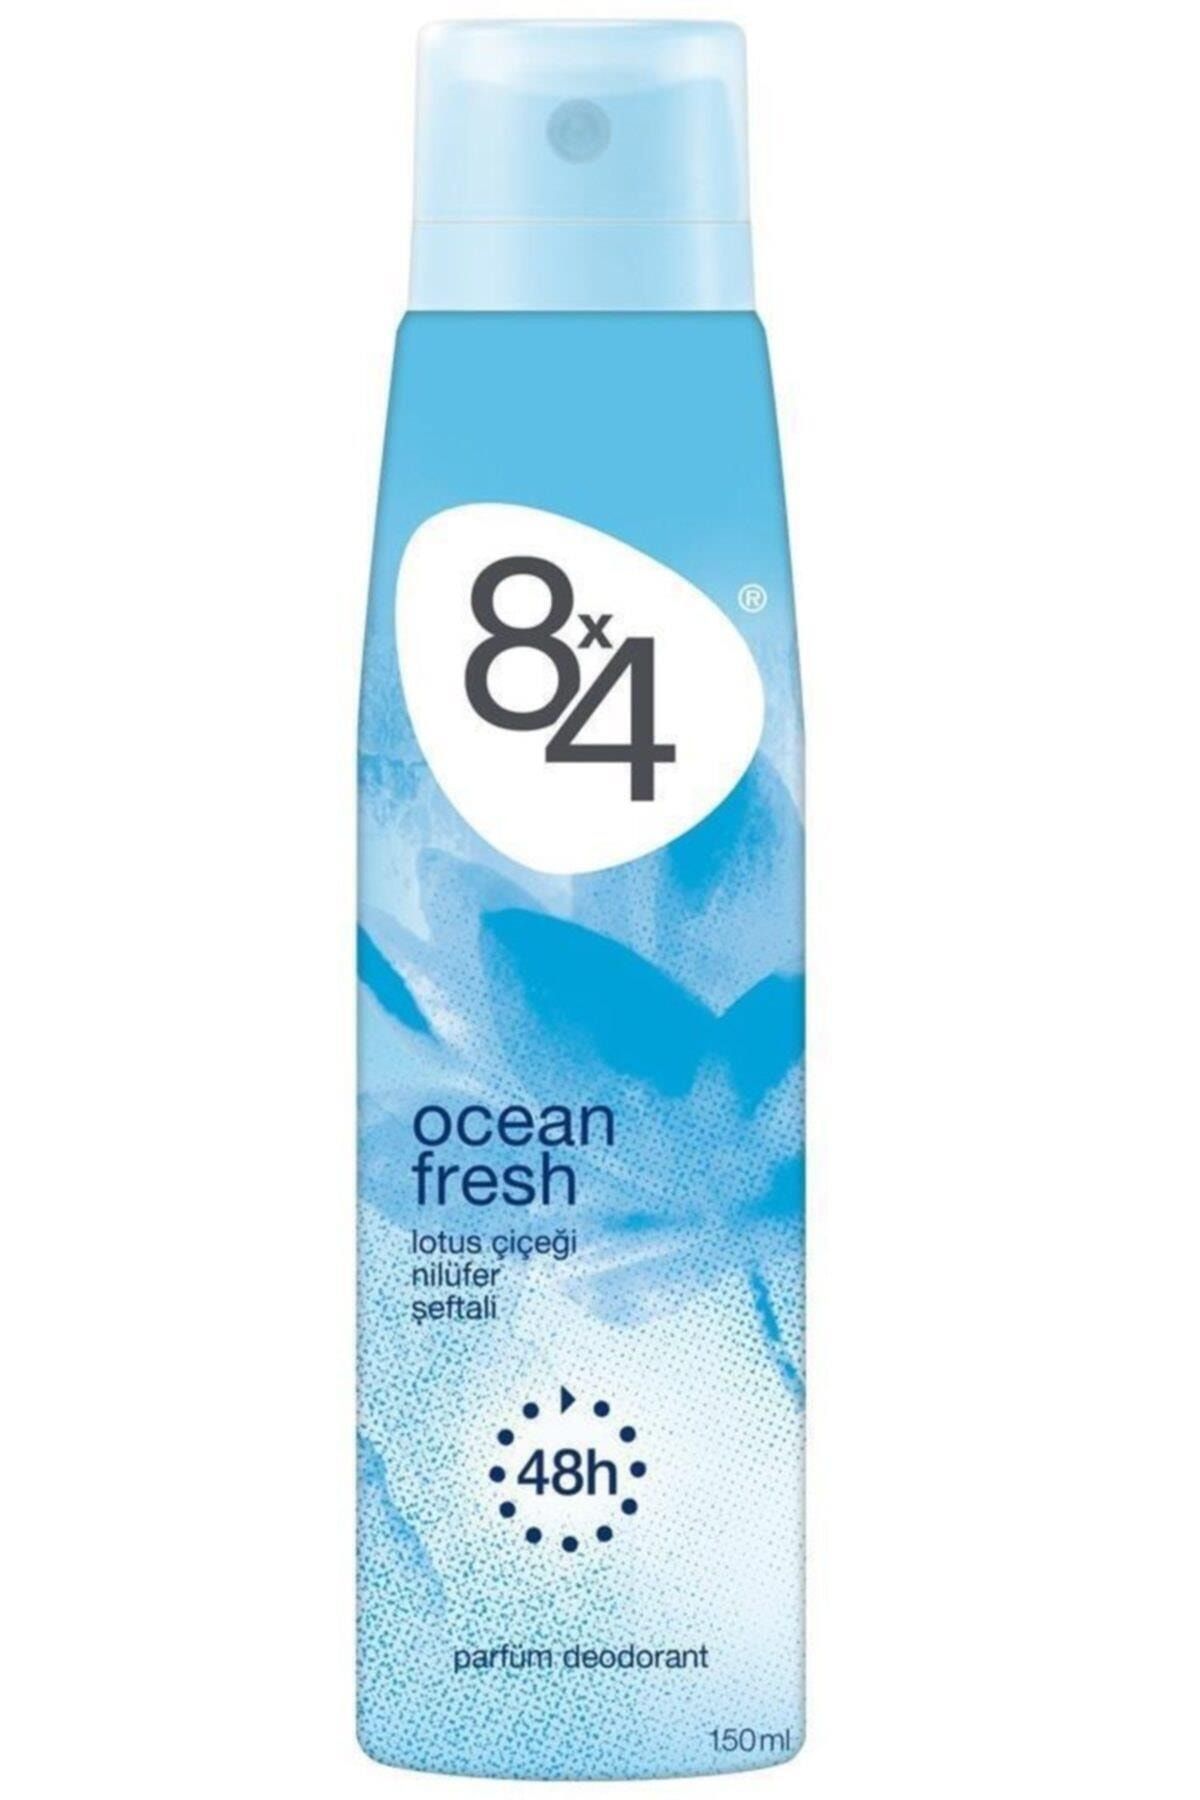 8x4 Ocean Fresh Pudrasız Kadın Deodorant 150 Ml 4005900186638